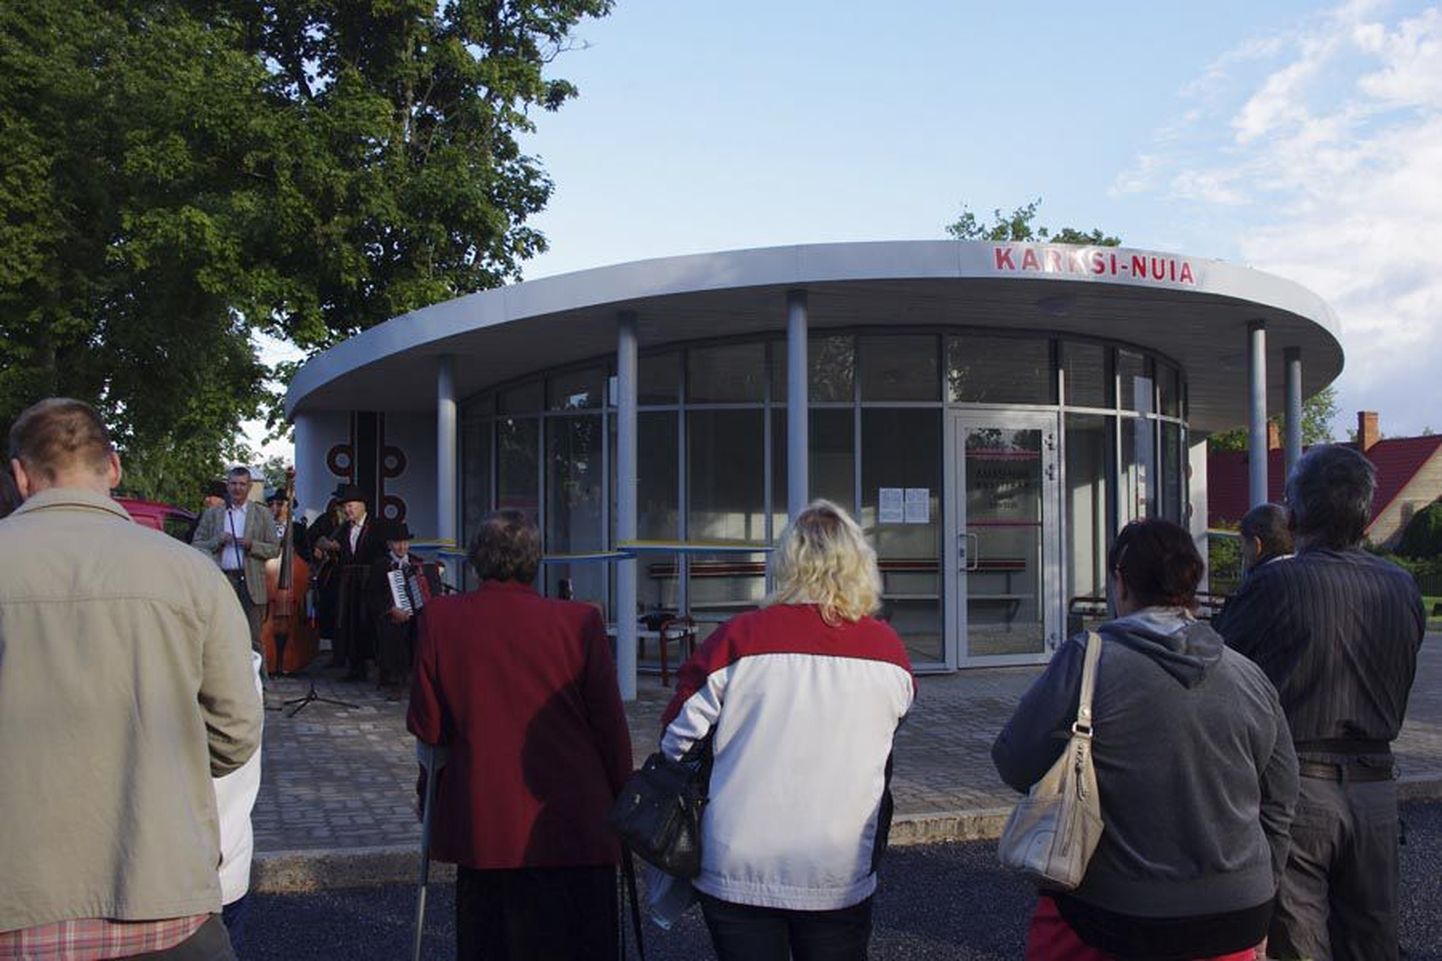 Karksi-Nuias avati eile uus bussijaam ning korrastatud sai ka jaama esine tee. Kokku võtsid tööd aega kolm kuud. Uue hoone avamine oli kohale meelitanud rohkem kui poolsada inimest ja jaamast saadeti peo ajal teele neli liinibussi.